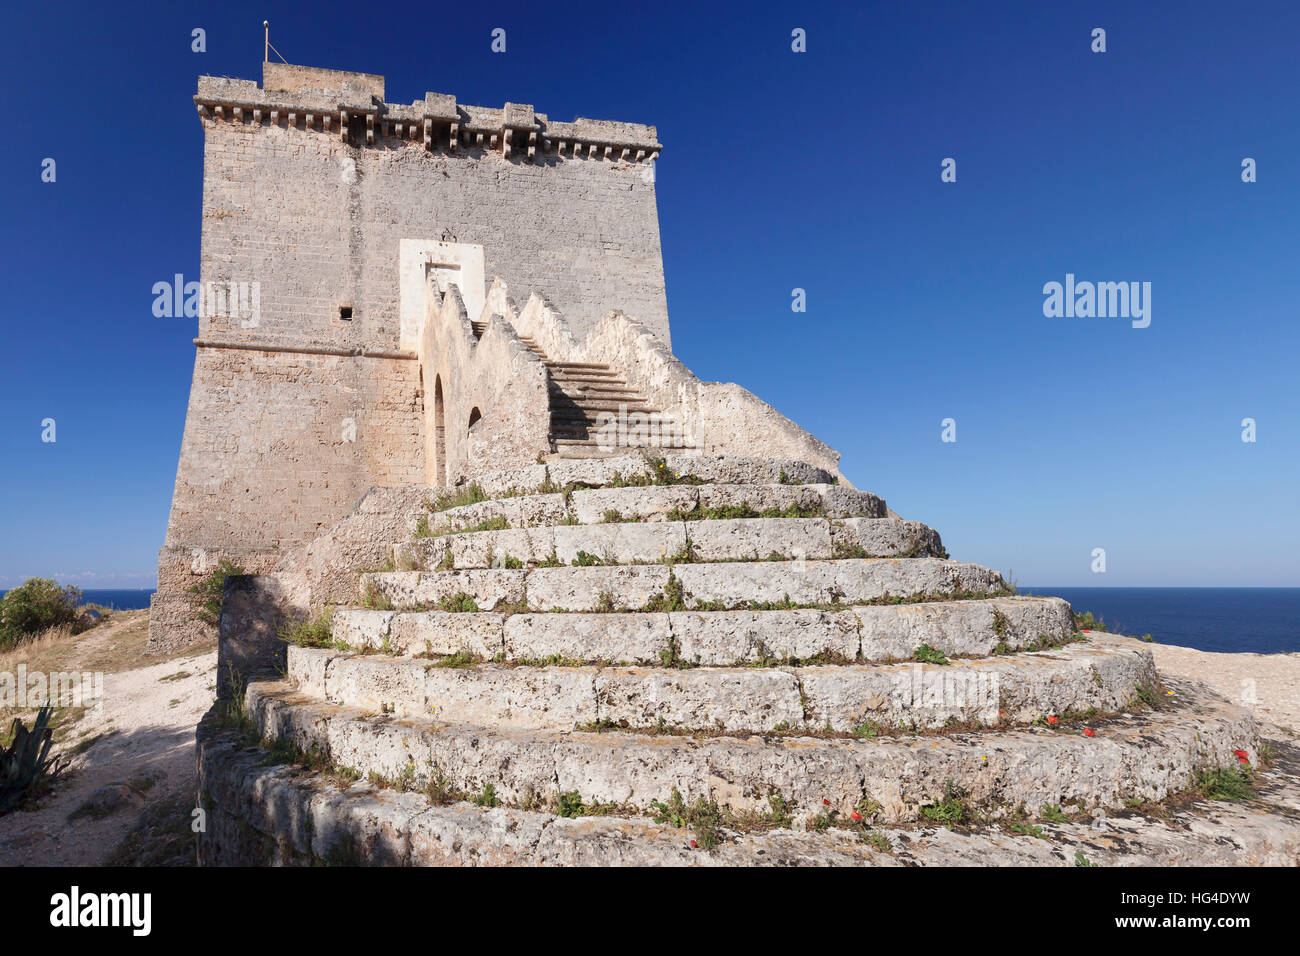 Torre dell'Alto, Santa Maria al Bagno, Lecce province, Salentine Peninsula, Puglia, Italy Stock Photo